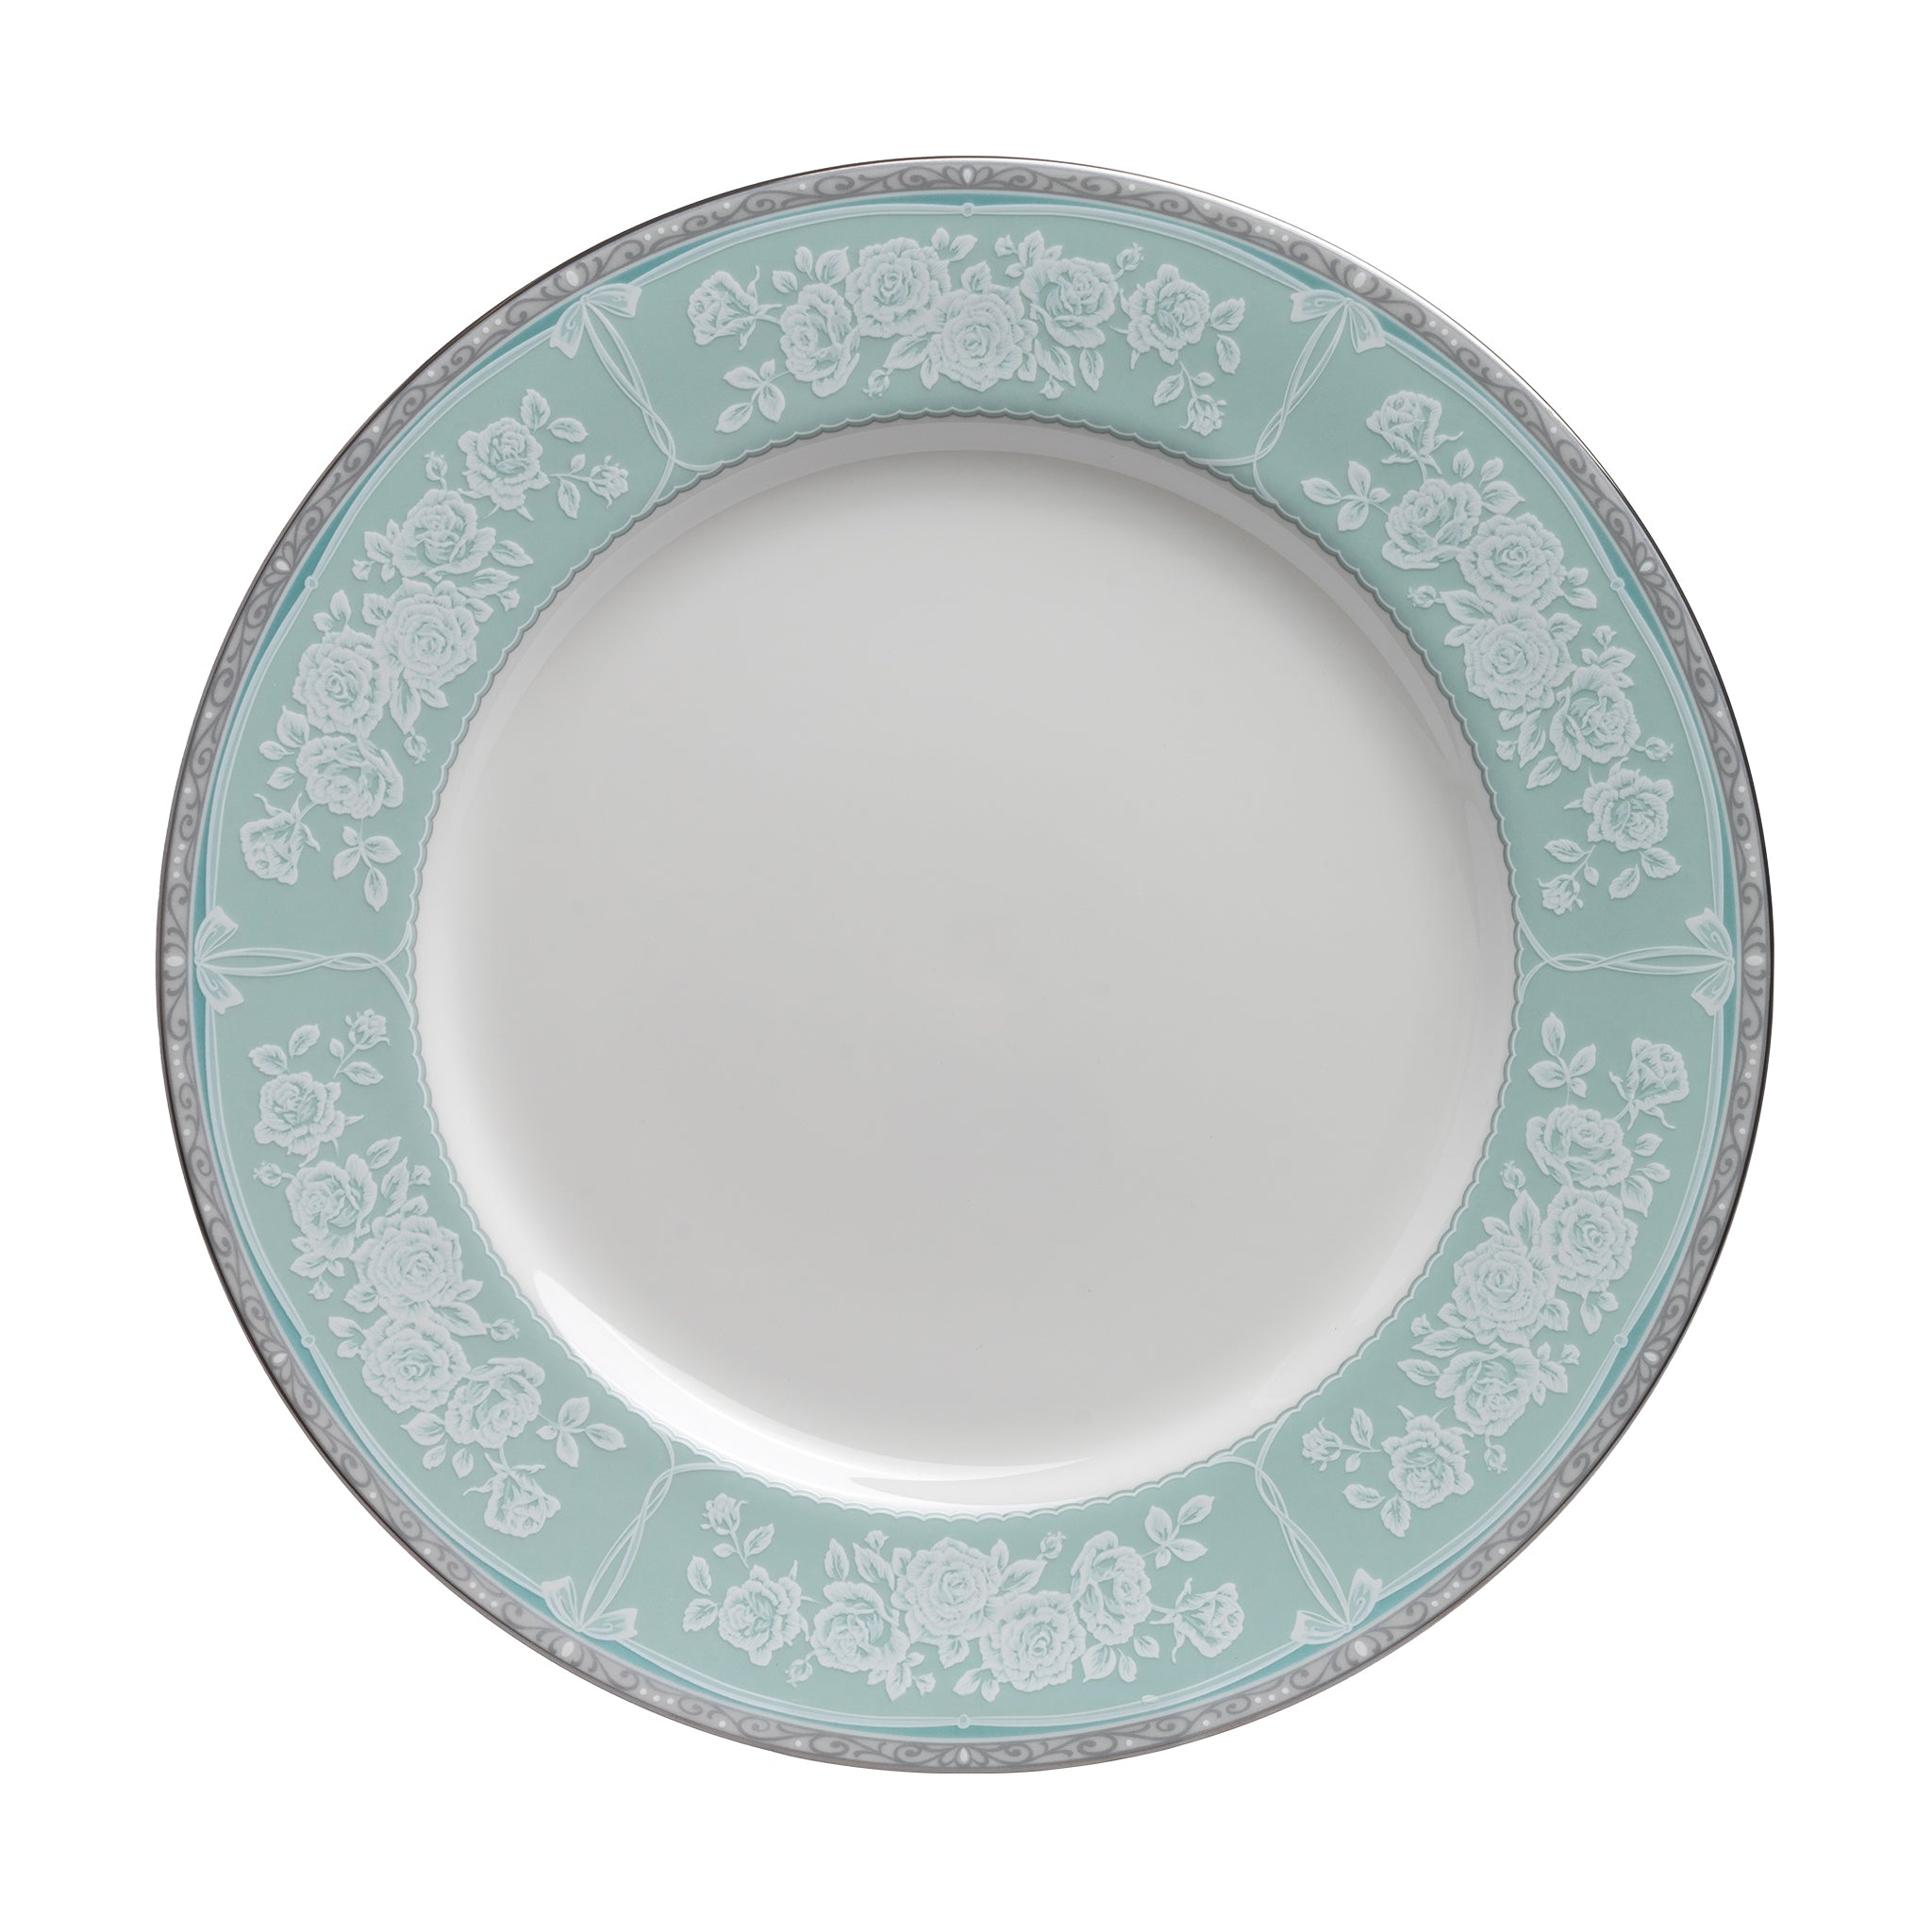 narumi graceair 27cm plate plates 